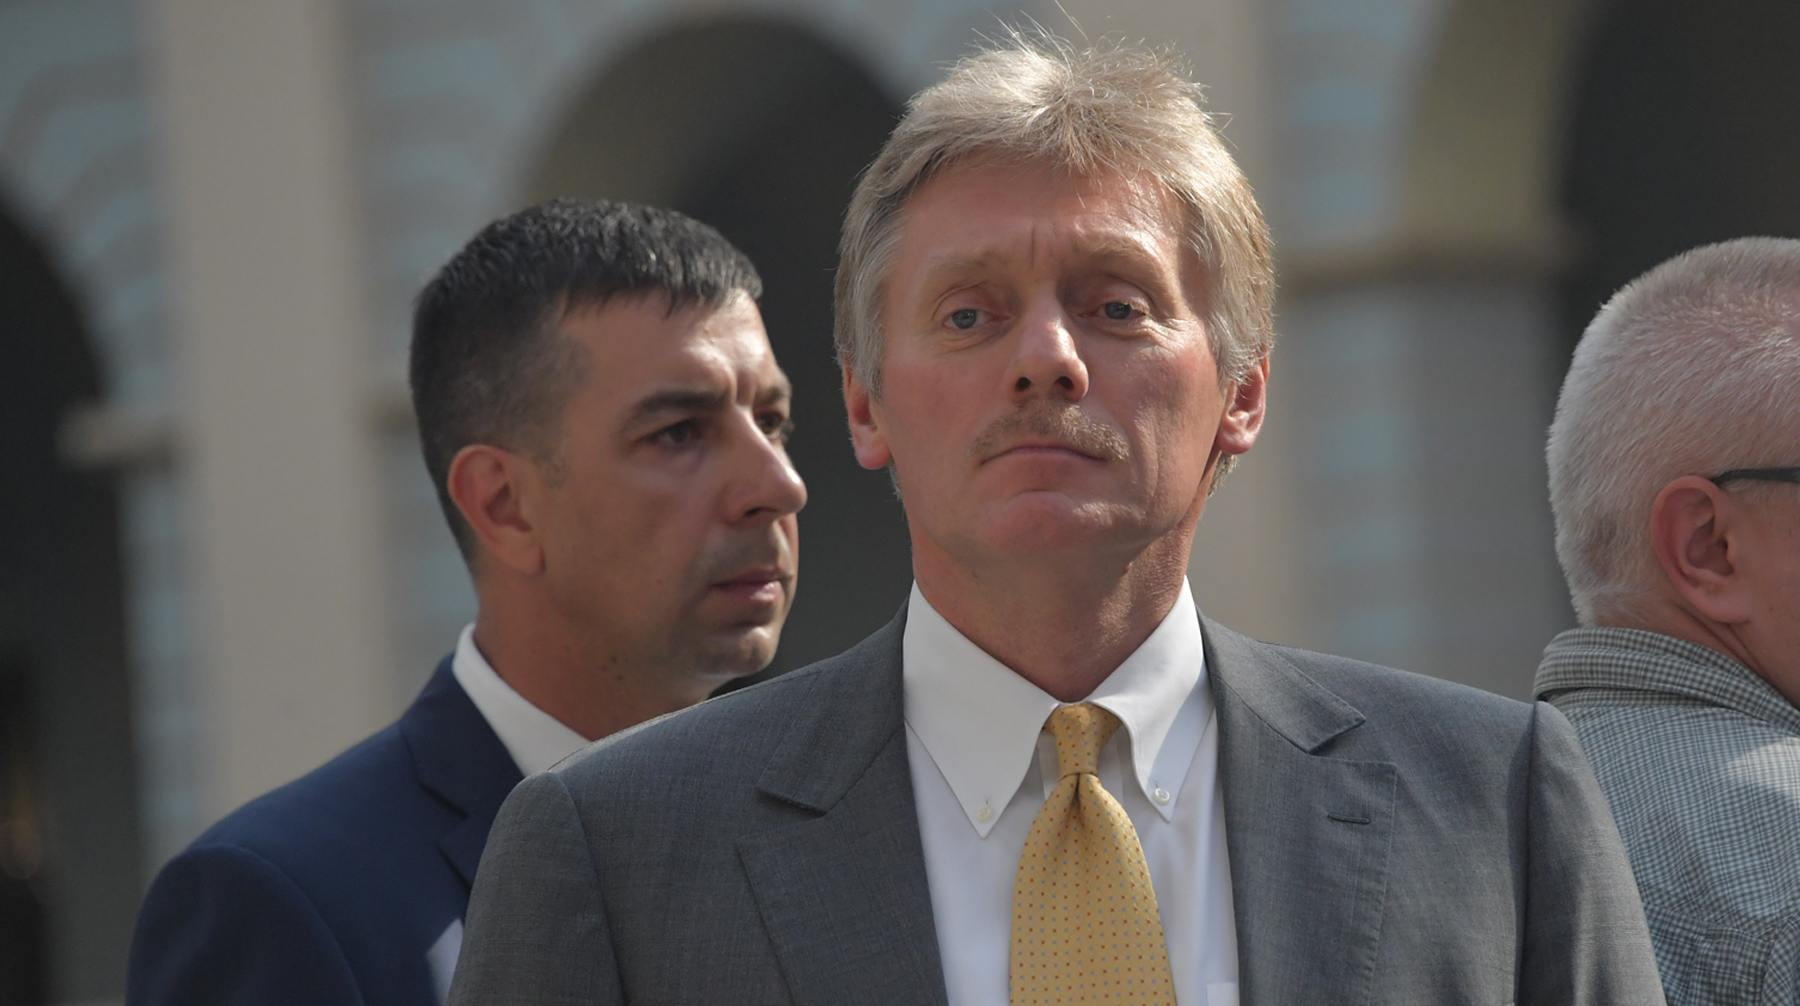 Пресс-секретарь президента обратил внимание, что все руководство Грузии решительно осудило эту выходку Песков